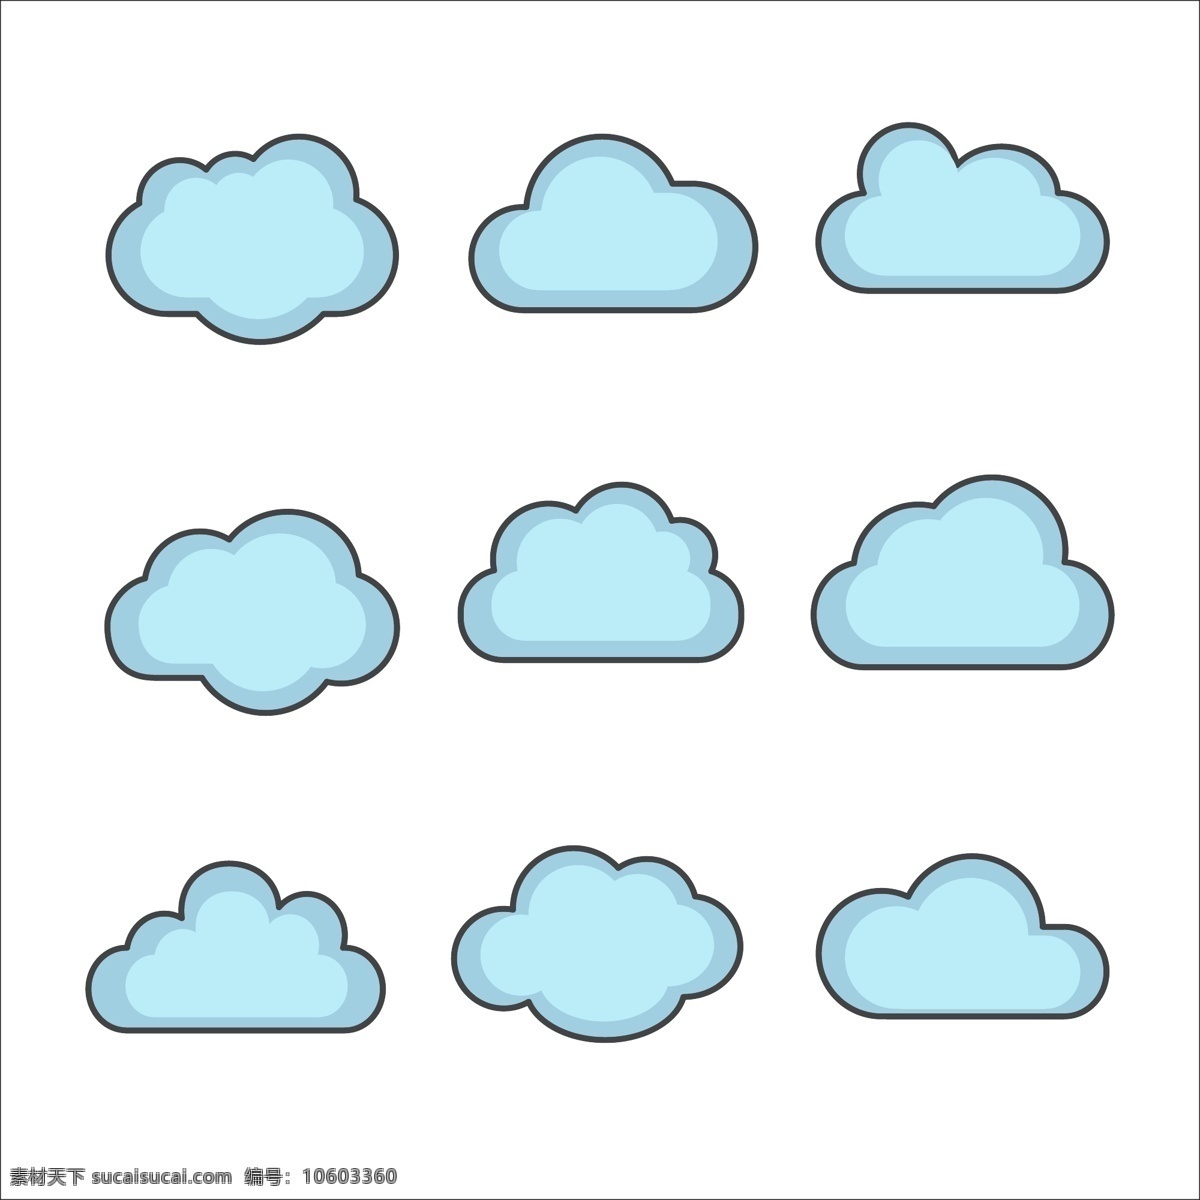 矢量 云朵 分层 矢量云朵 蓝色 背景 包装设计 模板 创意 刀版 eps分层 矢量素材 卡通设计